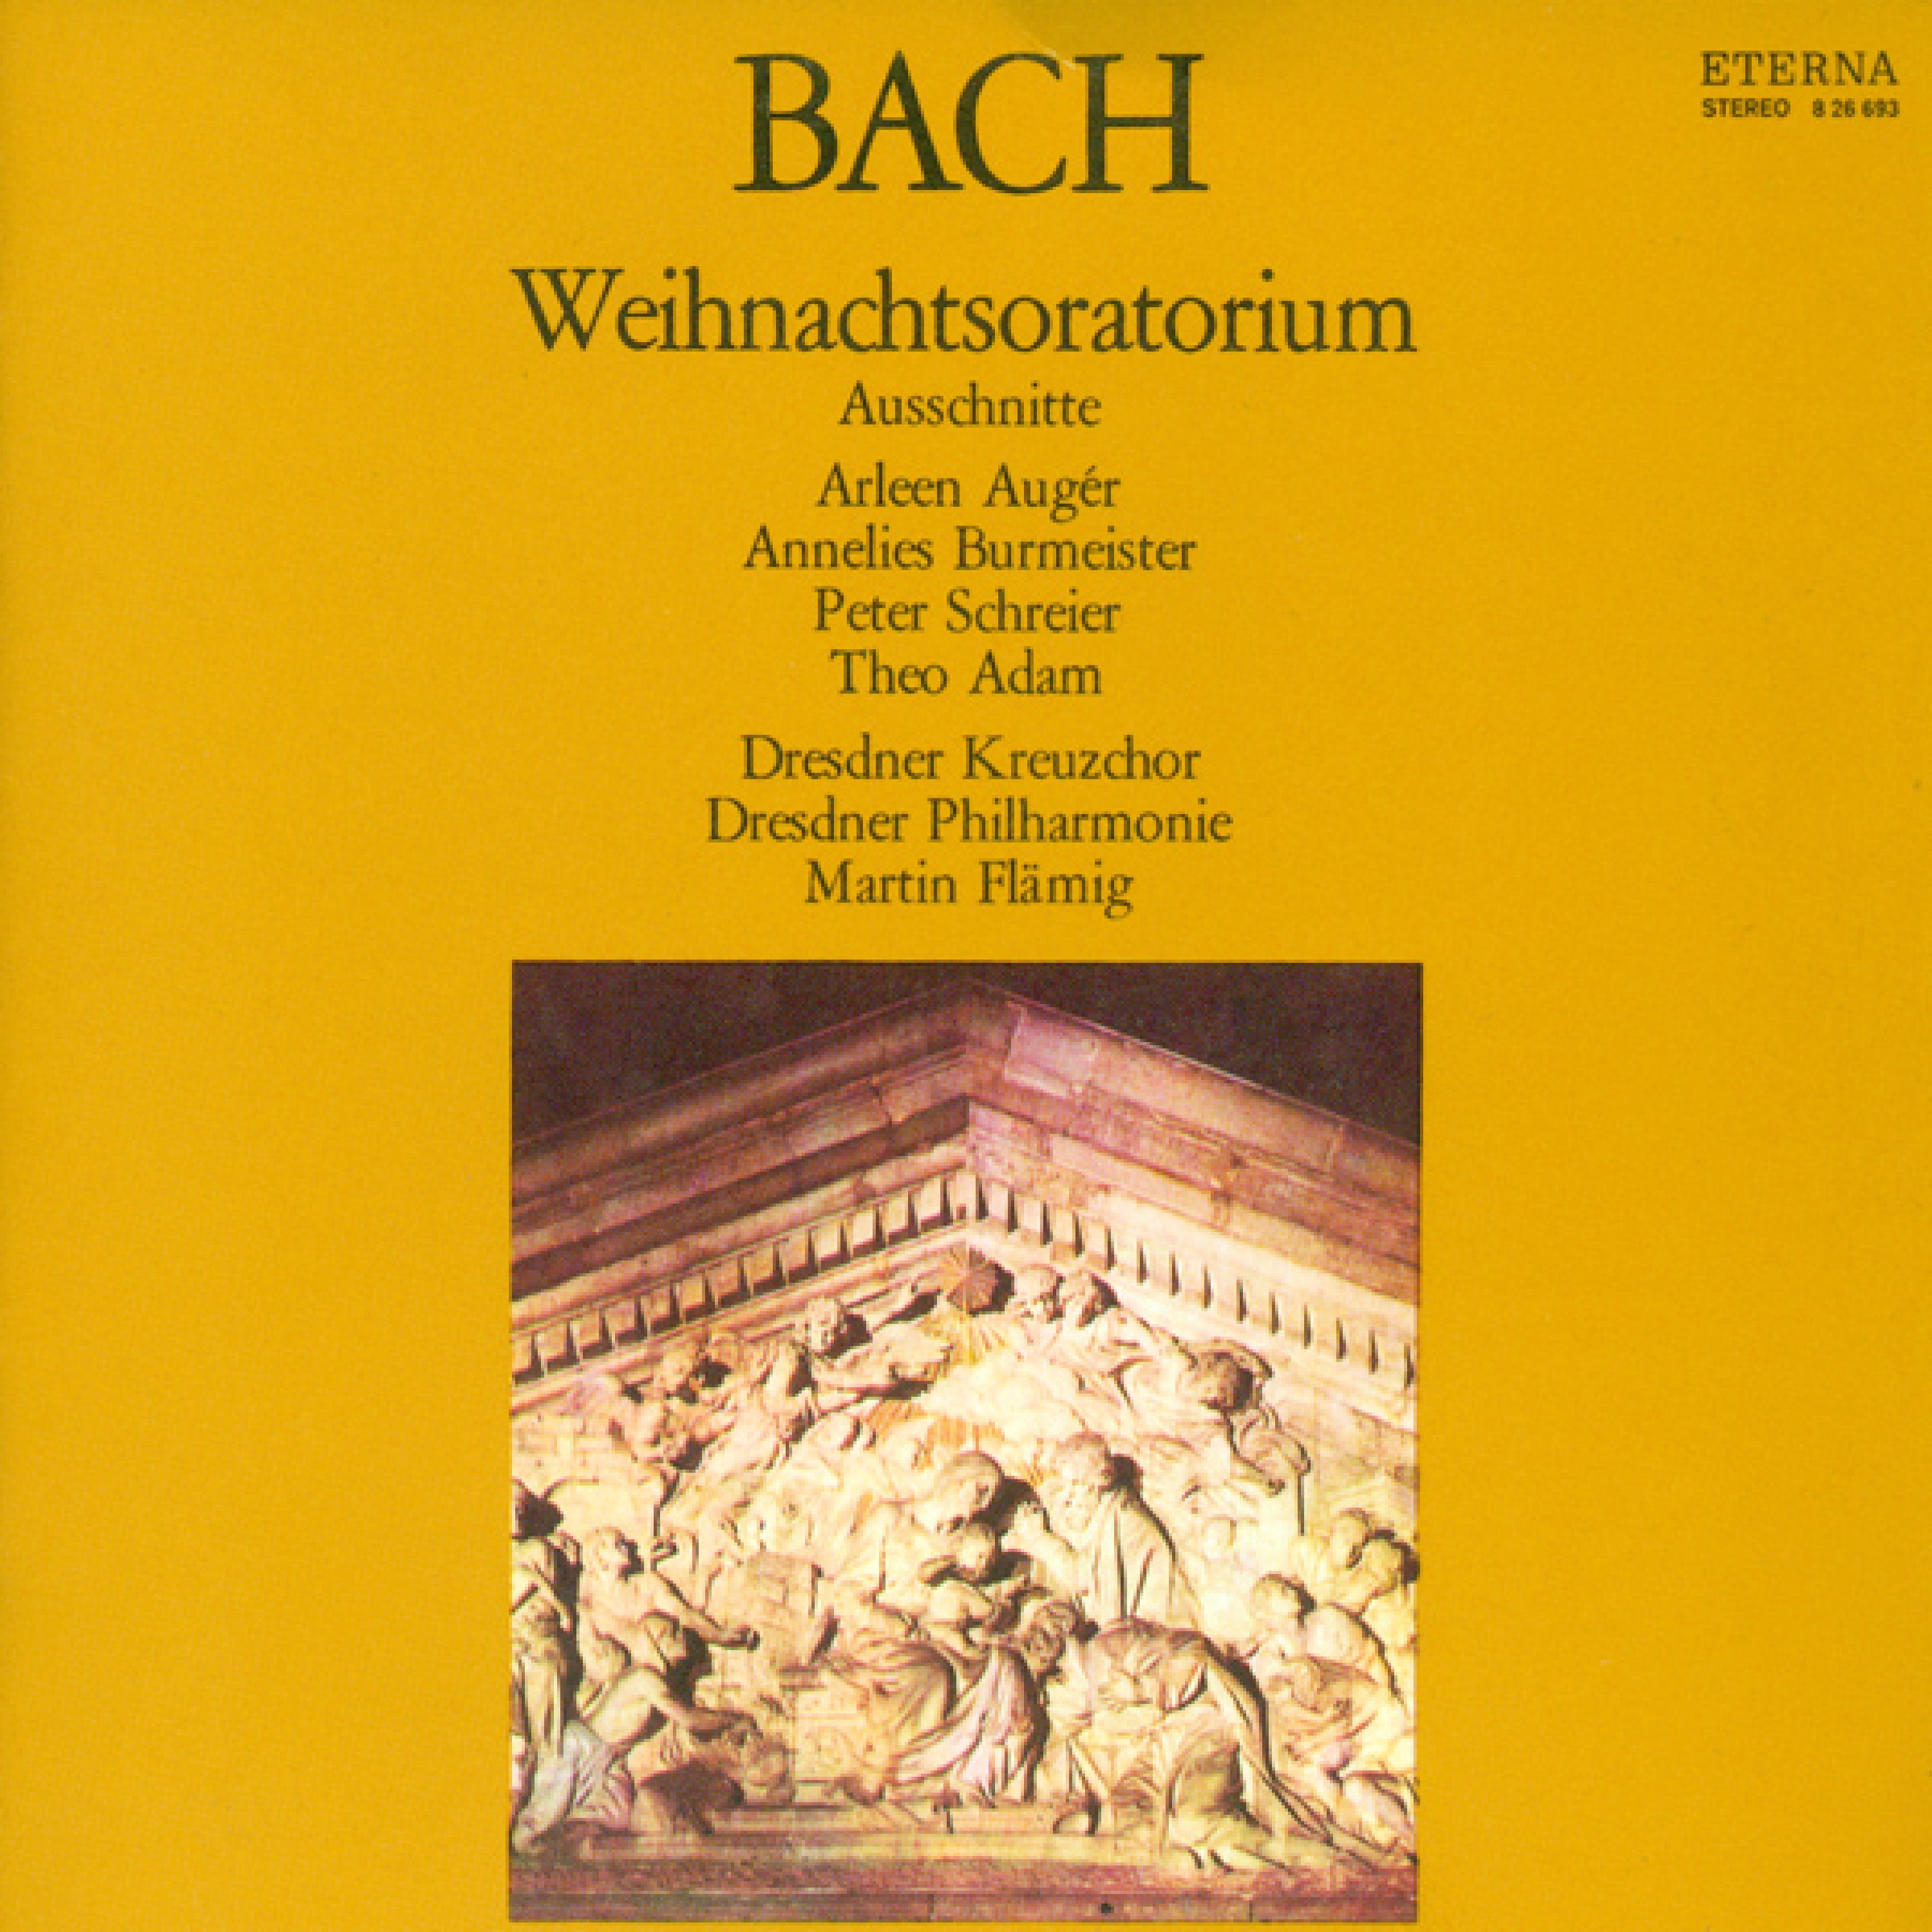 Weihnachtsoratorium, BWV 248: Teil IV  " Fl t, mein Heiland, fl t dein Namen"